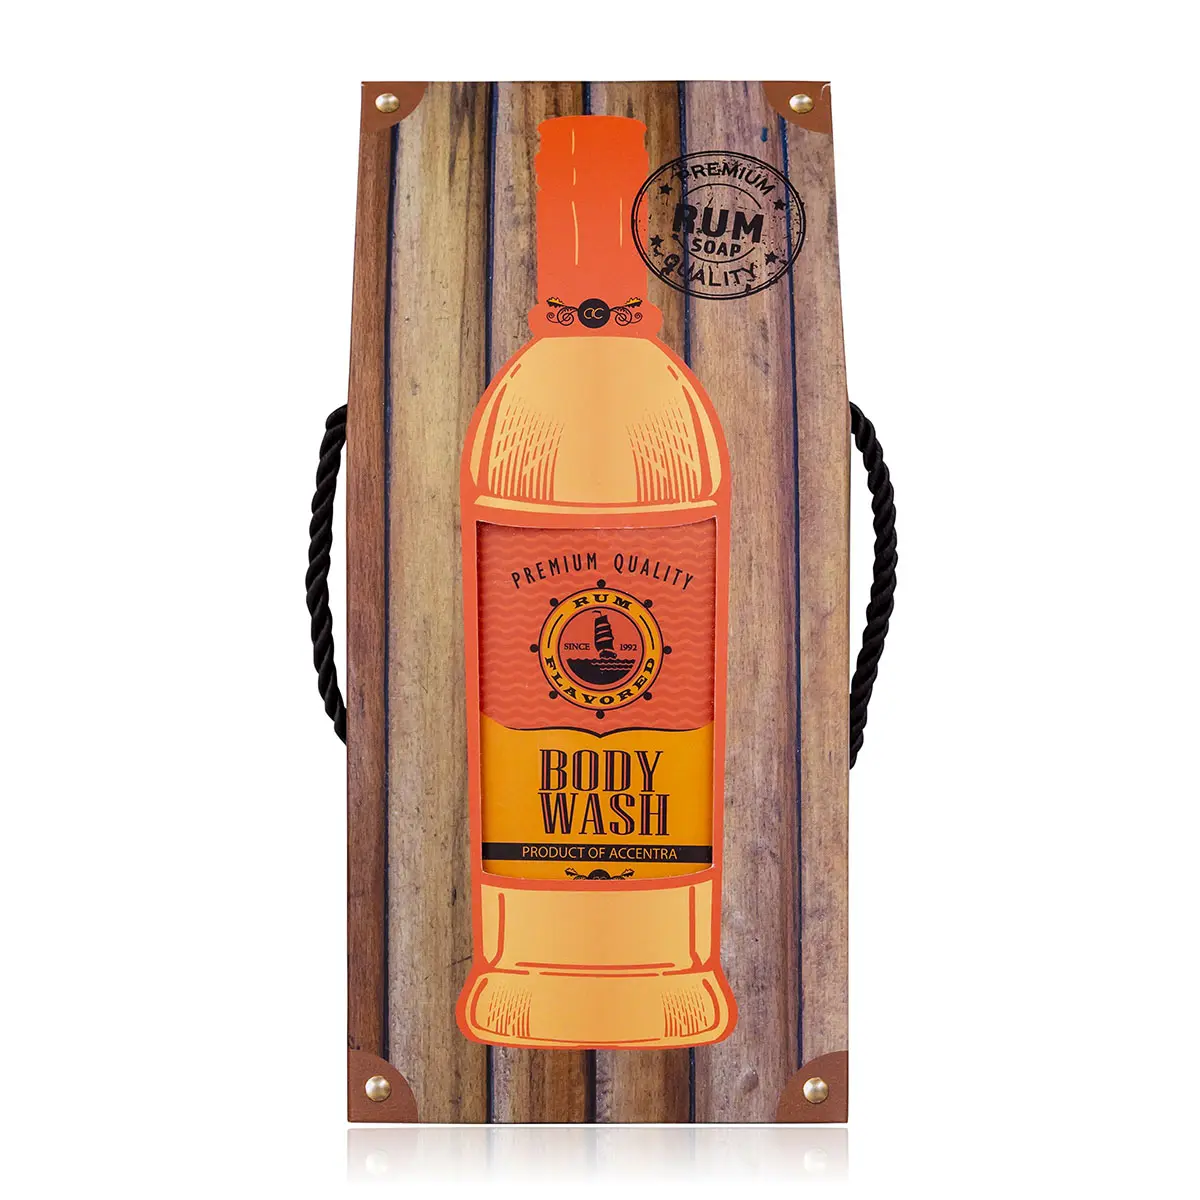 Acentra Shower gel RUM rasa dalam botol termasuk Kotak hadiah dengan tampilan rum, 400ml, aroma: rum, warna: oranye/merah